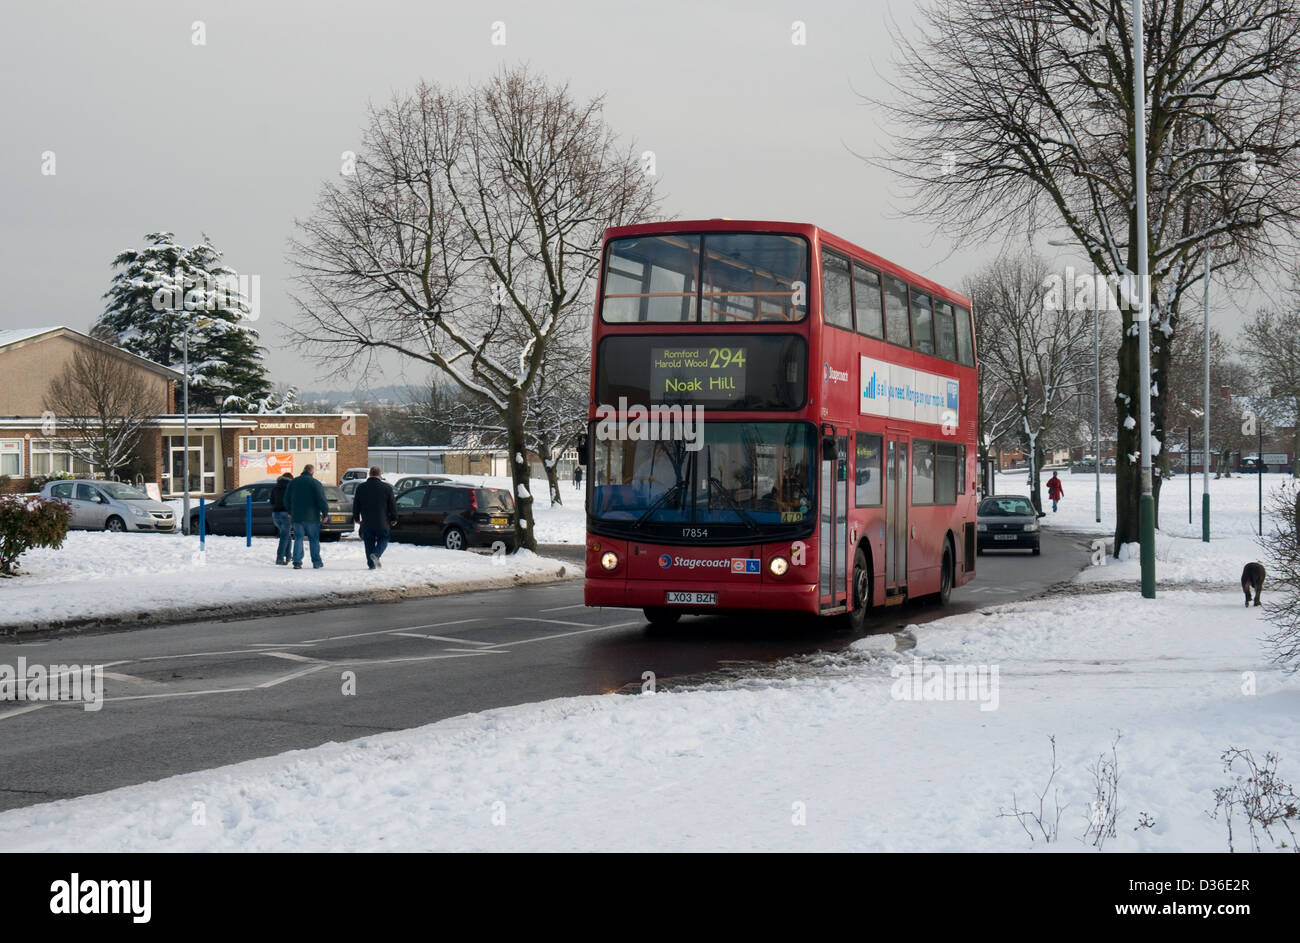 Un Dennis Trident operado por Stagecoach London hace su camino a Noak Hill pasado aceras cubiertas de nieve Foto de stock